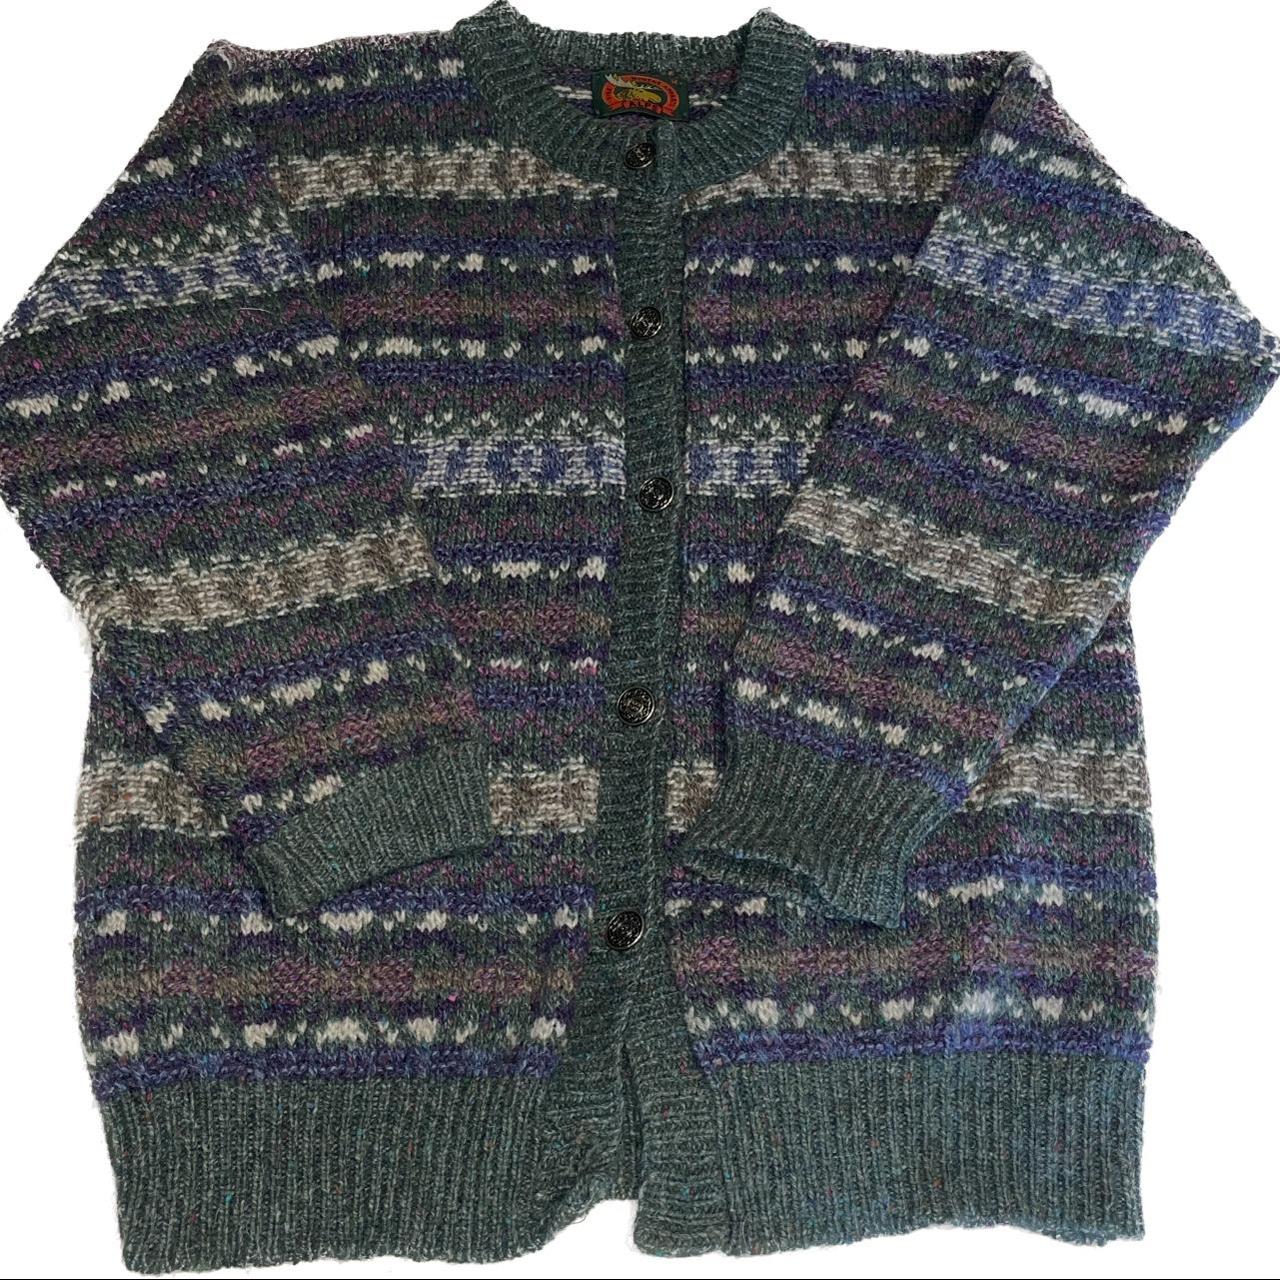 Vintage 100% Wool knit Alps cardigan with metal... - Depop